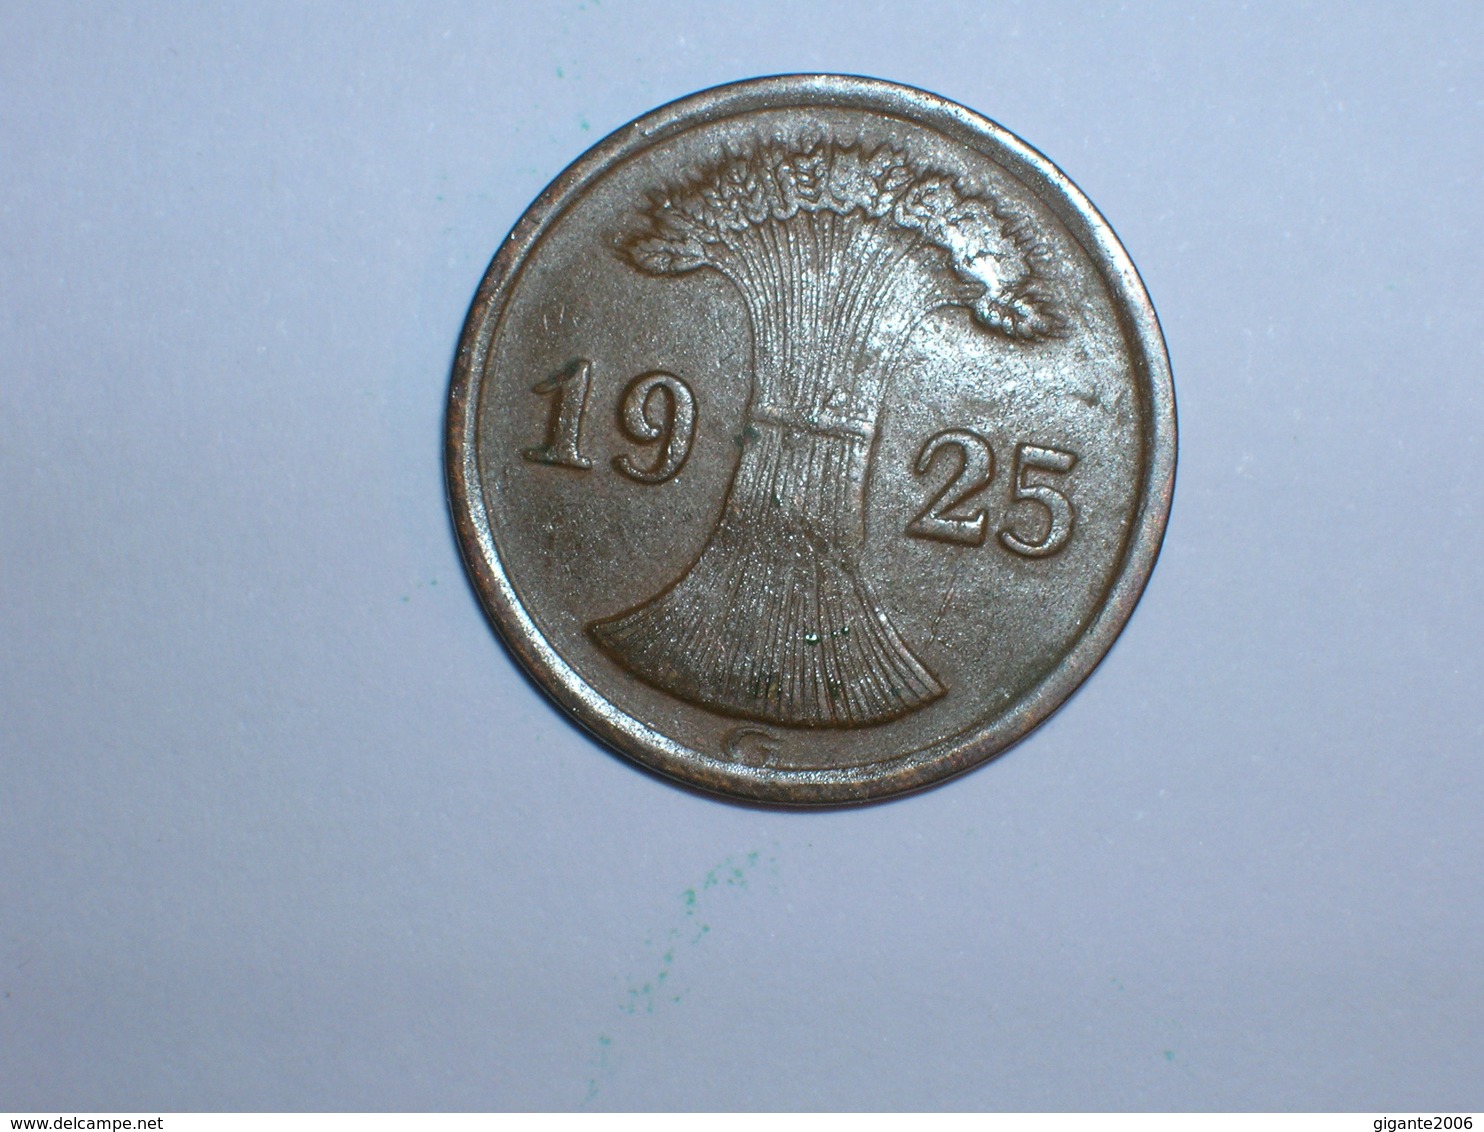 ALEMANIA 1 REICHPFENNIG 1925 G (1171) - 2 Rentenpfennig & 2 Reichspfennig